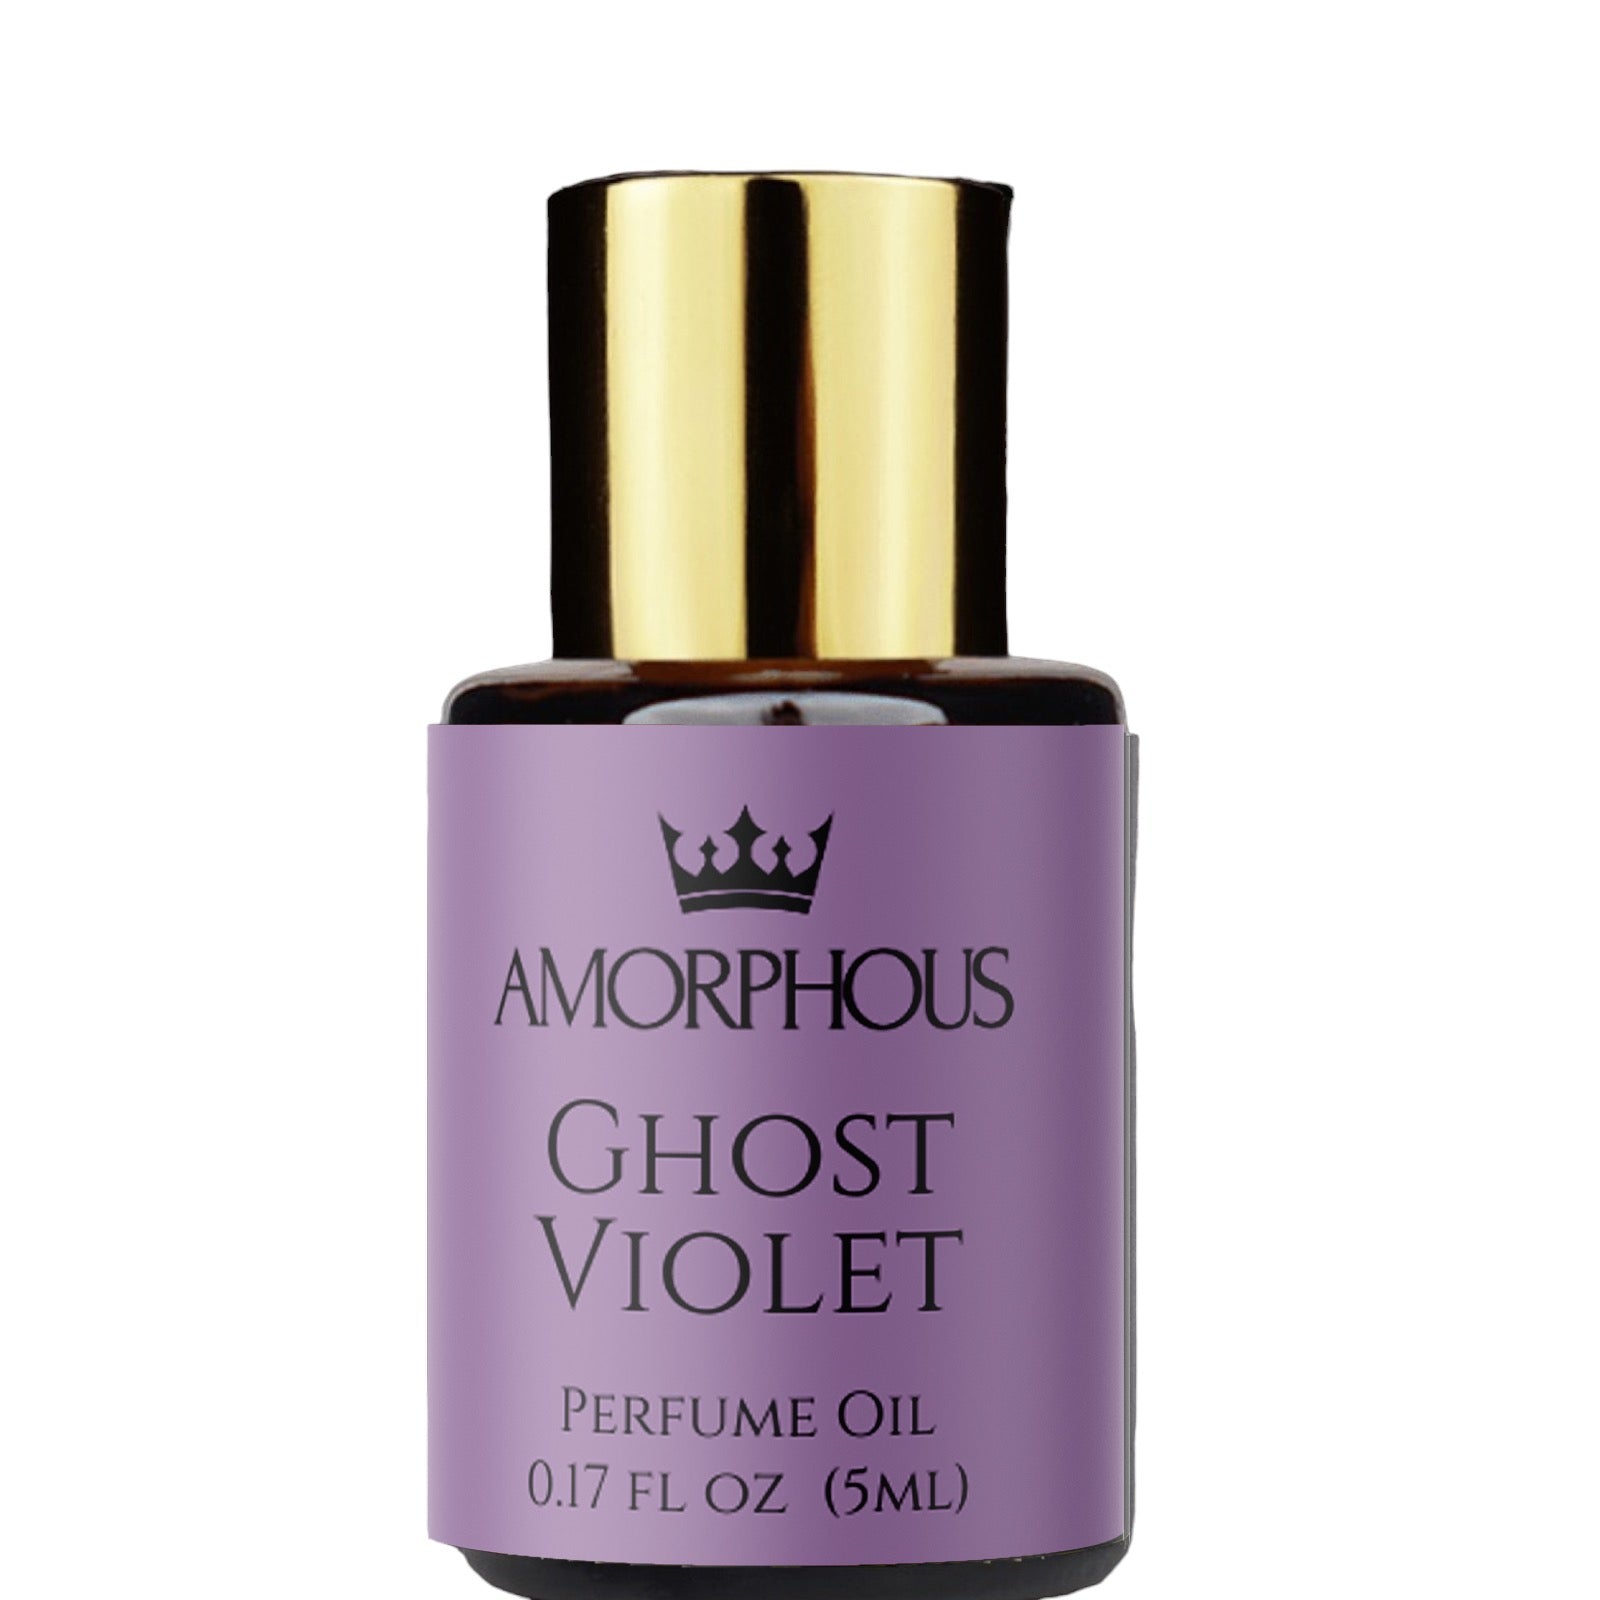 ghost violet perfume